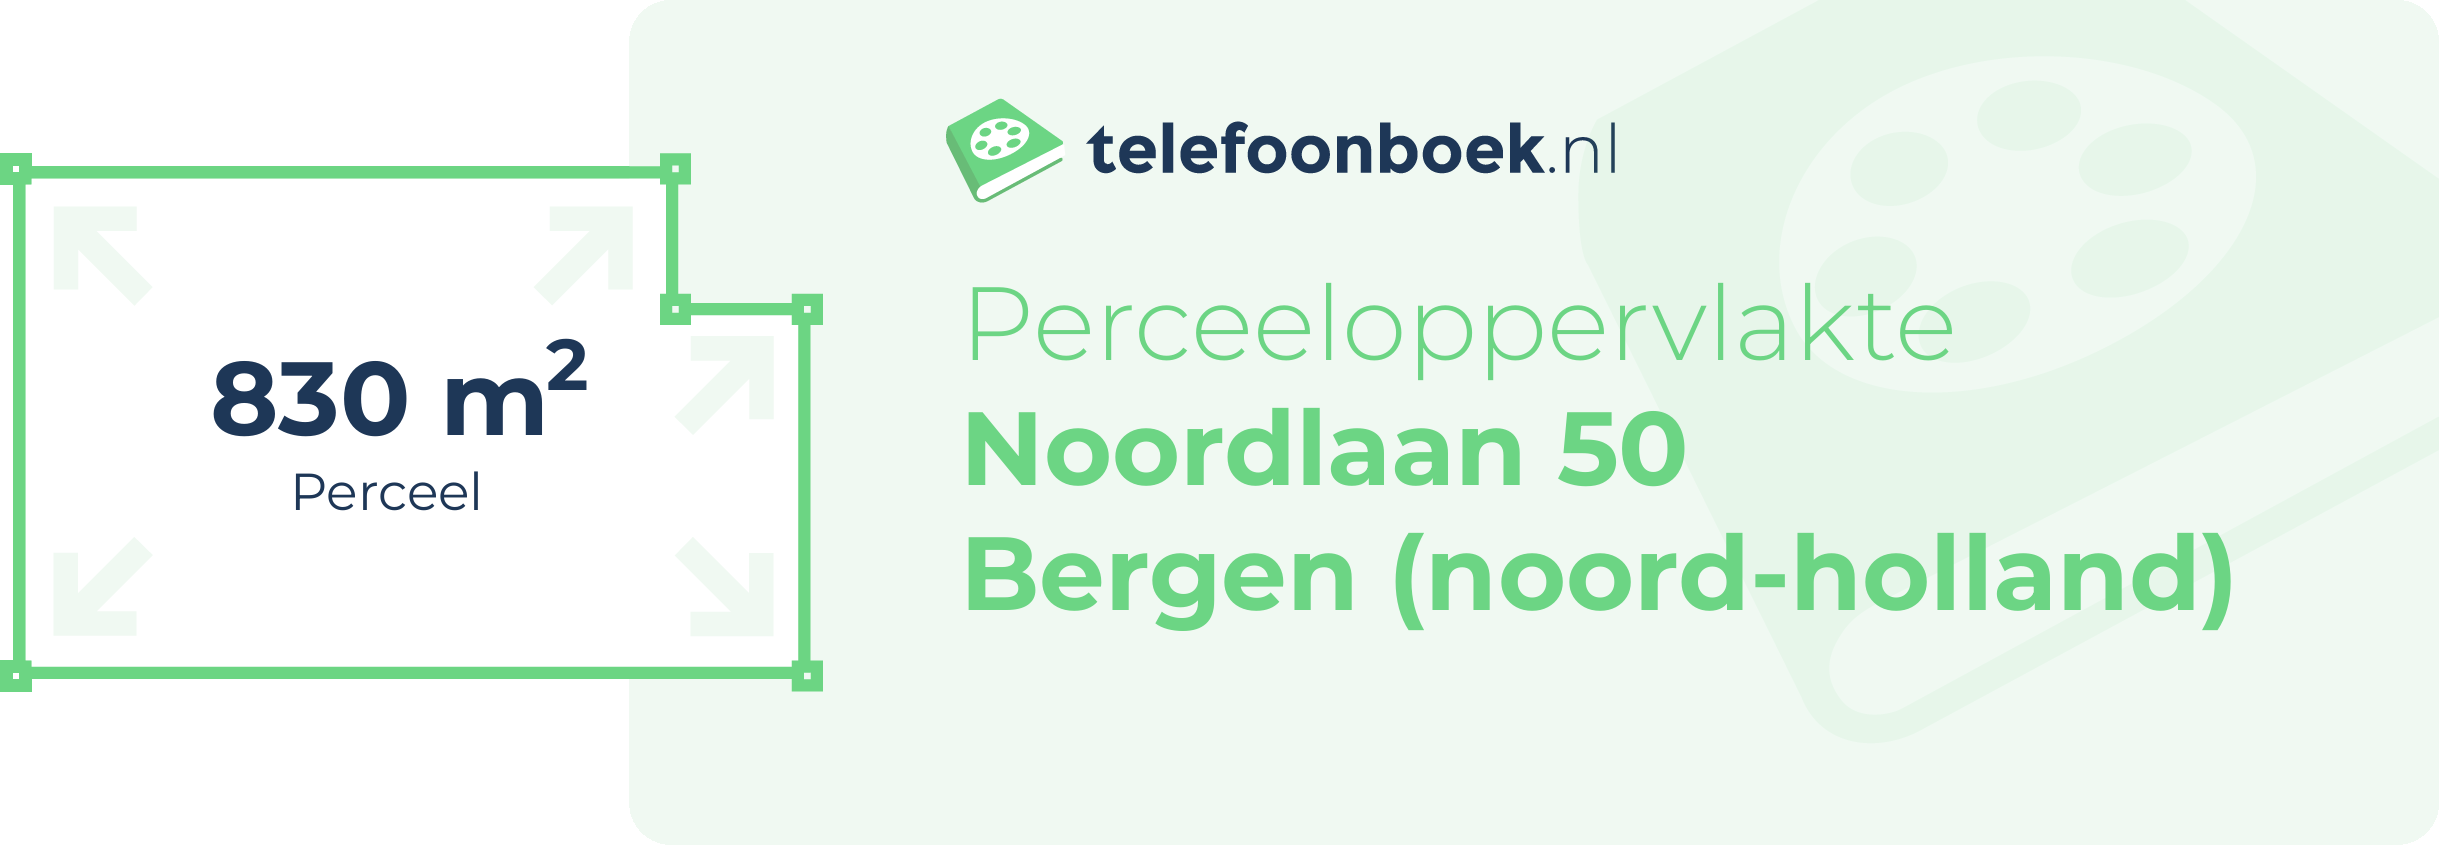 Perceeloppervlakte Noordlaan 50 Bergen (Noord-Holland)